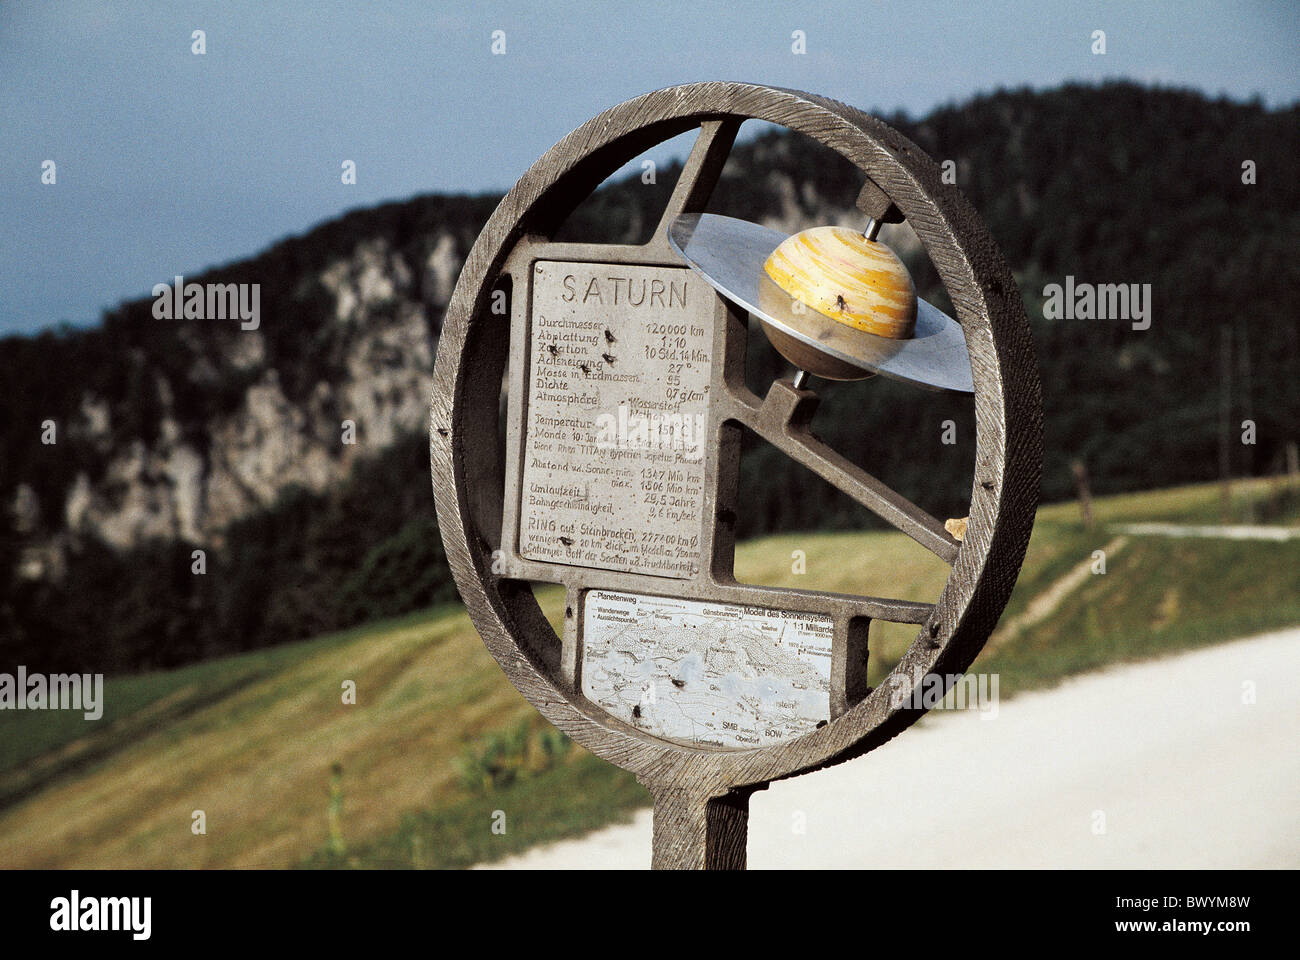 Planètes Saturne planète way sentier de sculptures en pierre blanche de l'Europe Suisse canton de Soleure canton Jura Swi Banque D'Images